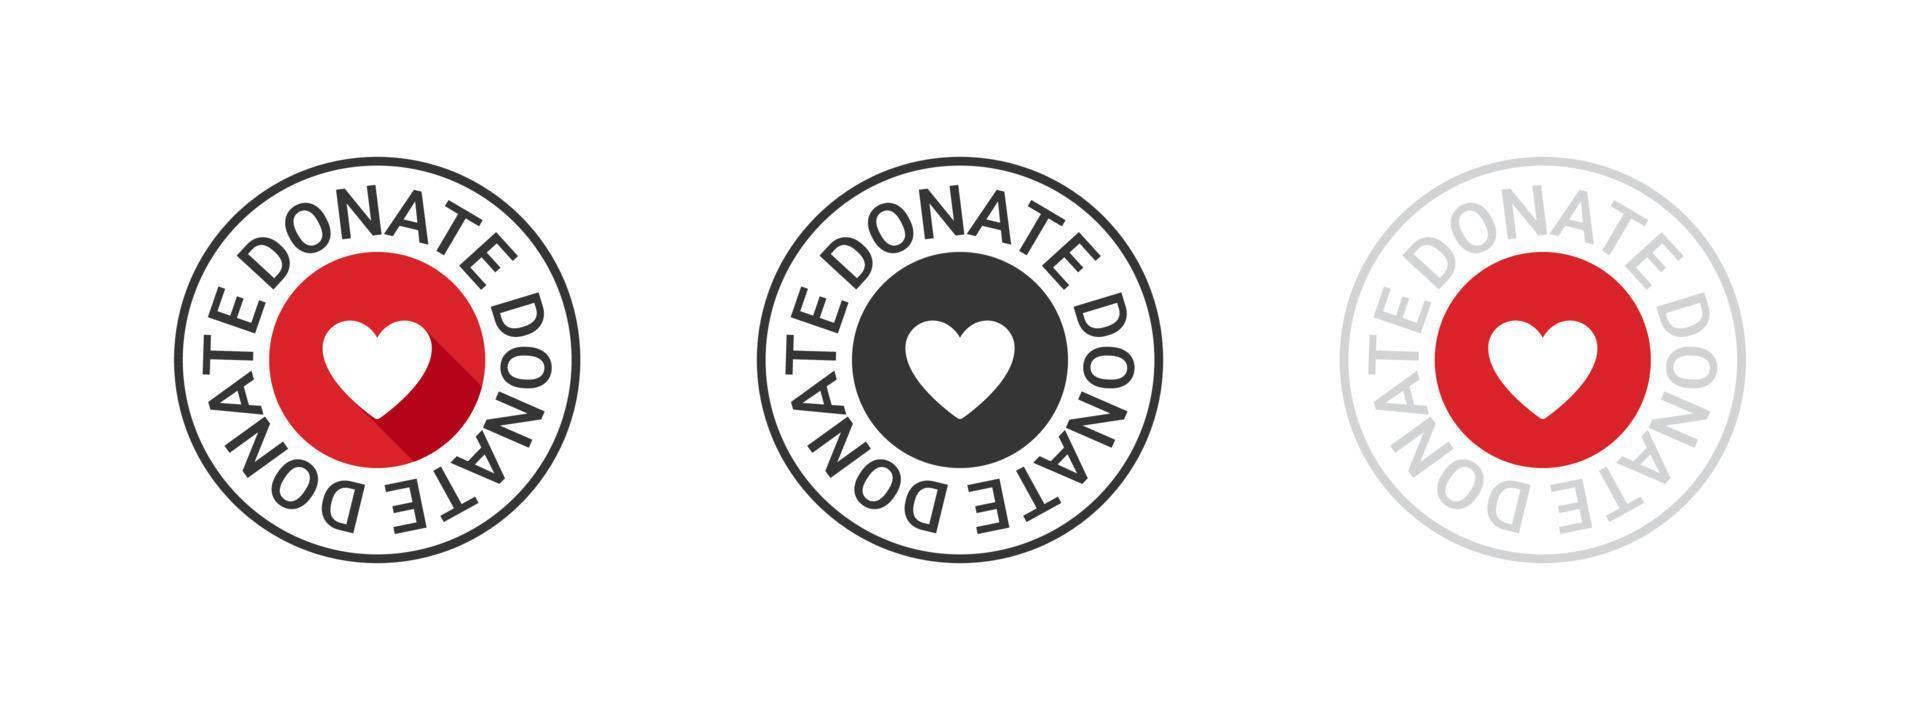 donation ikoner. konceptuell donation märken. välgörenhet ikoner. donationer relaterad tecken. vektor illustration